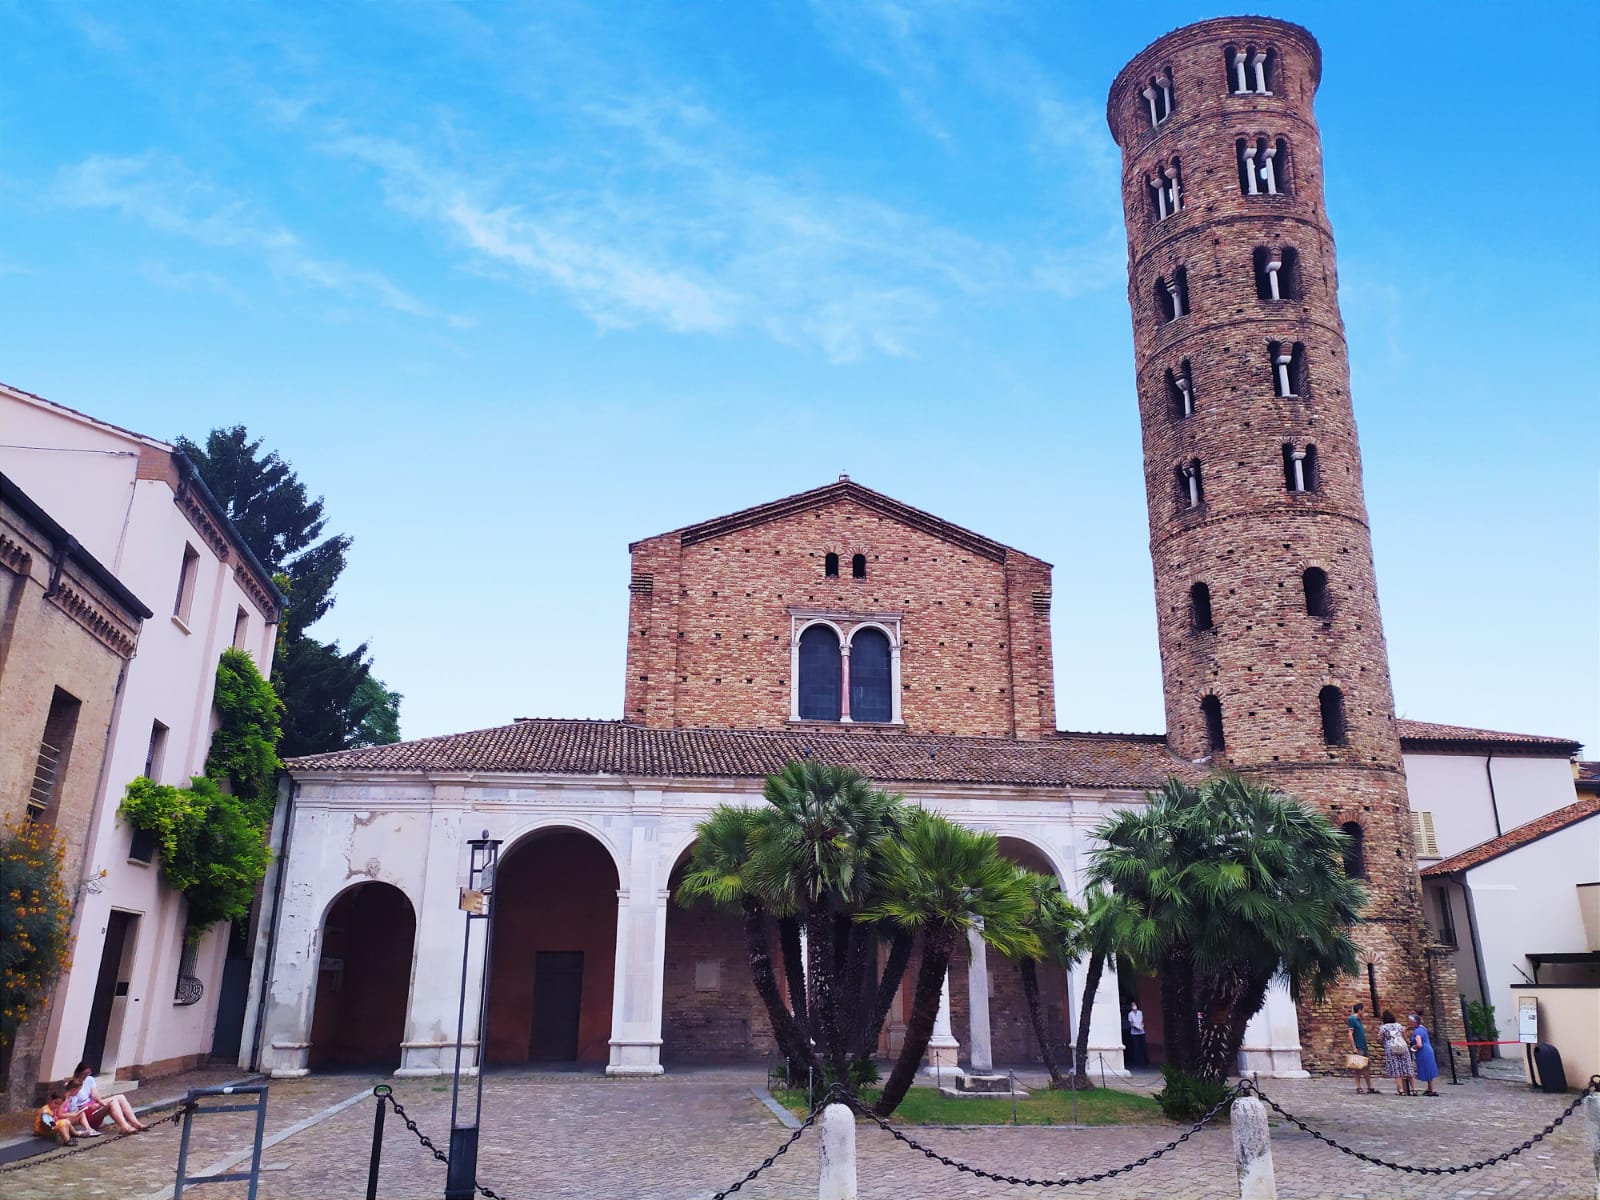 Basilica di Sant'Apollinare - Ravenna (foto Maurizio Cuomo)